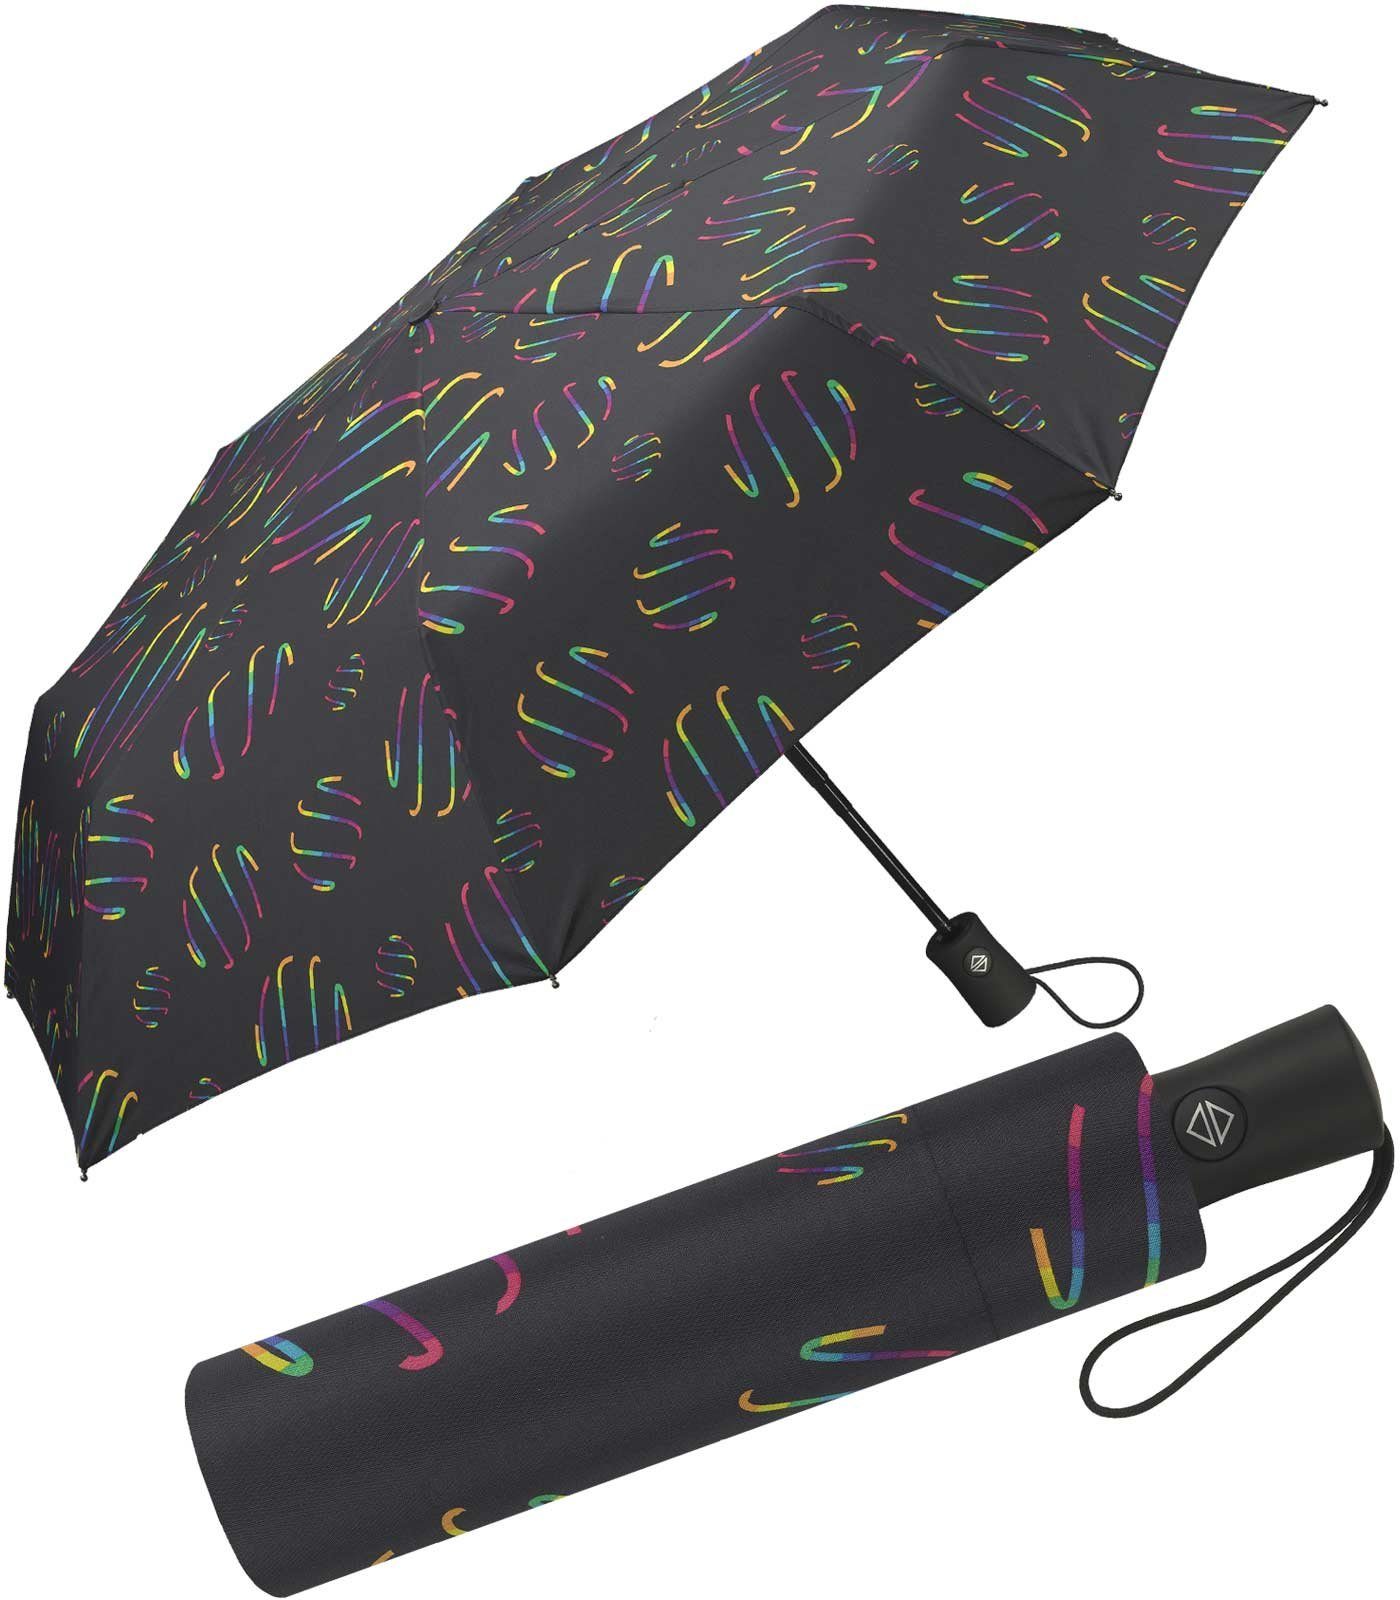 HAPPY RAIN Taschenregenschirm schöner Damen-Regenschirm mit Auf-Zu-Automatik, verspielte Regenbogen-Wirbel auf dunklem Grund